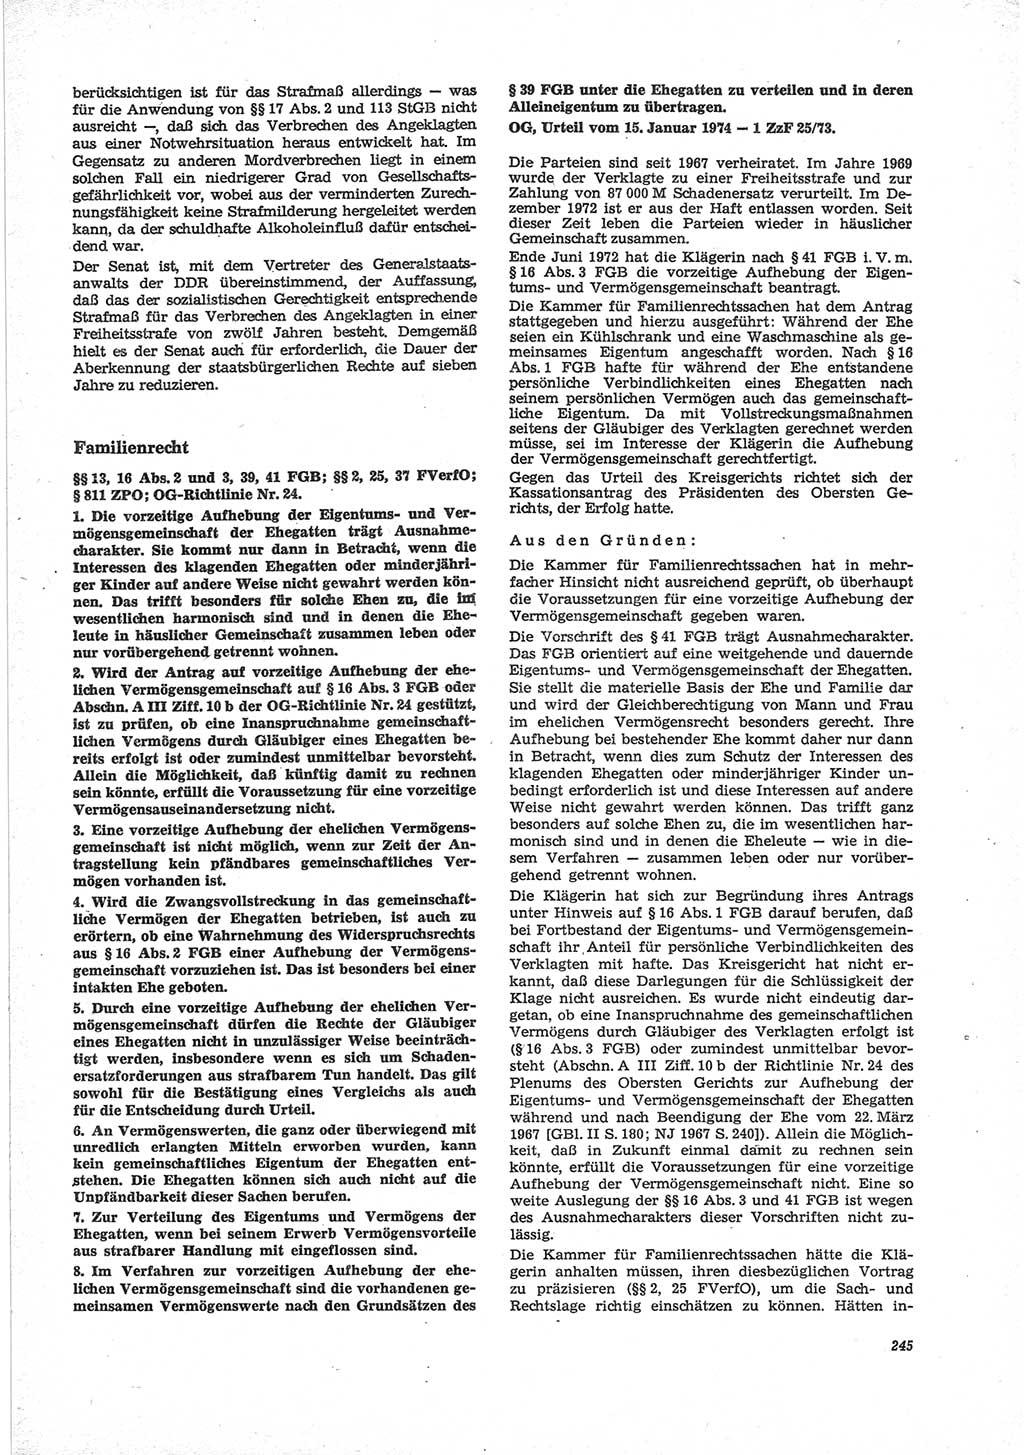 Neue Justiz (NJ), Zeitschrift für Recht und Rechtswissenschaft [Deutsche Demokratische Republik (DDR)], 28. Jahrgang 1974, Seite 245 (NJ DDR 1974, S. 245)